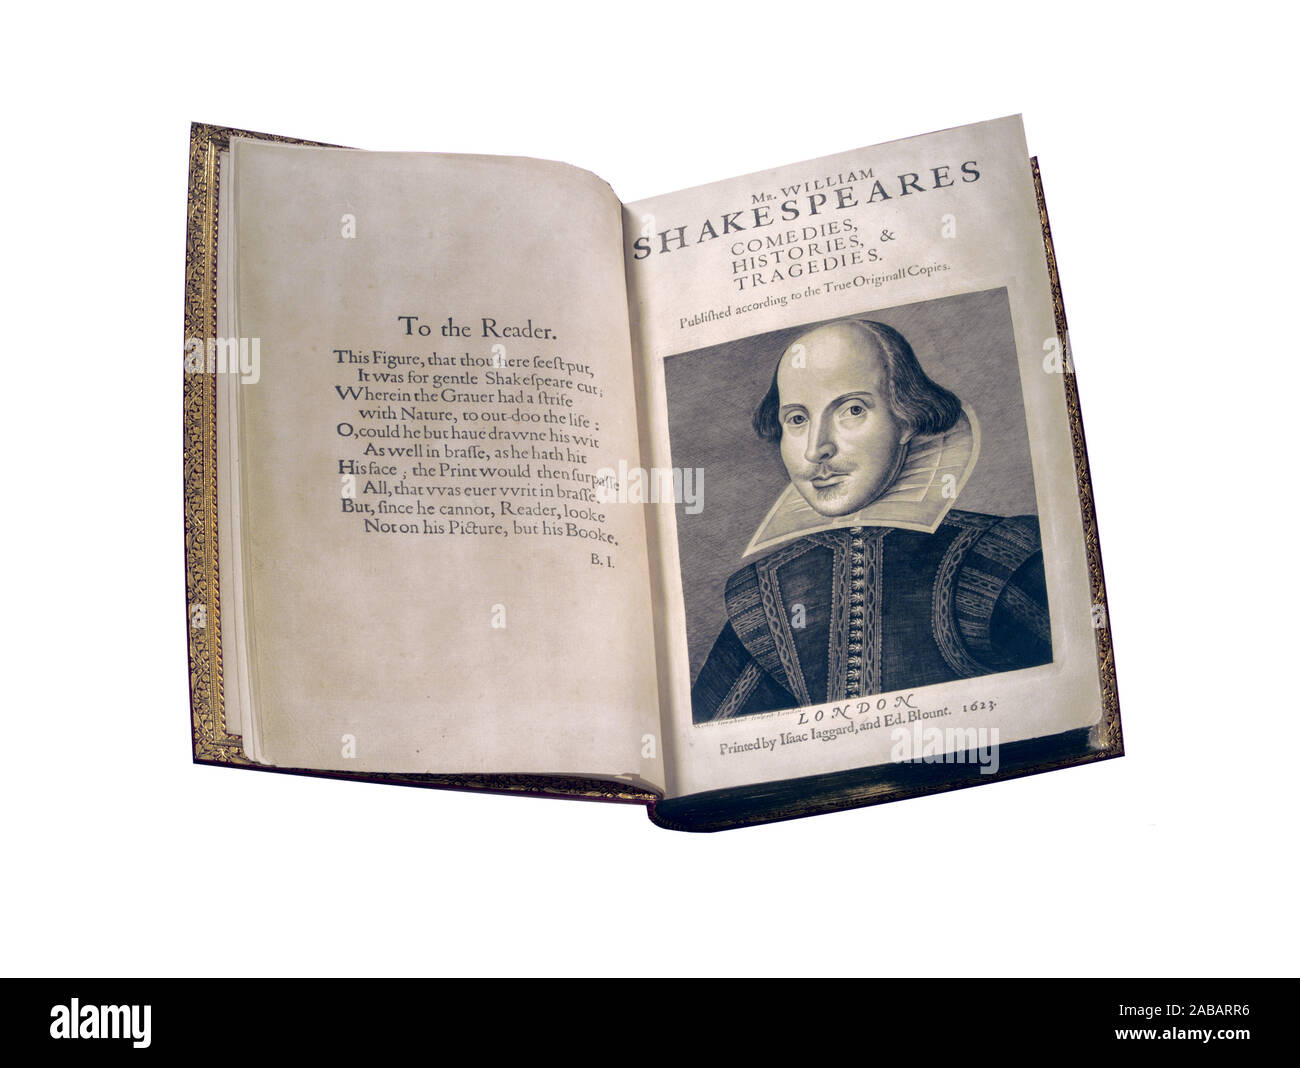 Shakespeares erste Folio-Titelseite mit Porträt des 17. Jahrhunderts William Shakespeare. Shakespeares Komödien, Geschichten Und Tragödien. Veröffentlicht nach den wahren Originalkopien. London, gedruckt von Isaac Iaggard, und Ed. Blount, Stich des Künstlers Martin Droeshout, 1623 der Droeshout-Porträt oder Droeshout-Stich ist ein Porträt William Shakespeares, das von Martin Droeshout als Frontispiz für das Titelblatt der ersten Folio-Sammlung von Shakespeares Stücken, die 1623 veröffentlicht wurde, graviert wurde. Es ist eines von nur zwei Kunstwerken, die definitiv als Darstellung des Dichters erkennbar sind. Ausschnitt auf Weiß Stockfoto